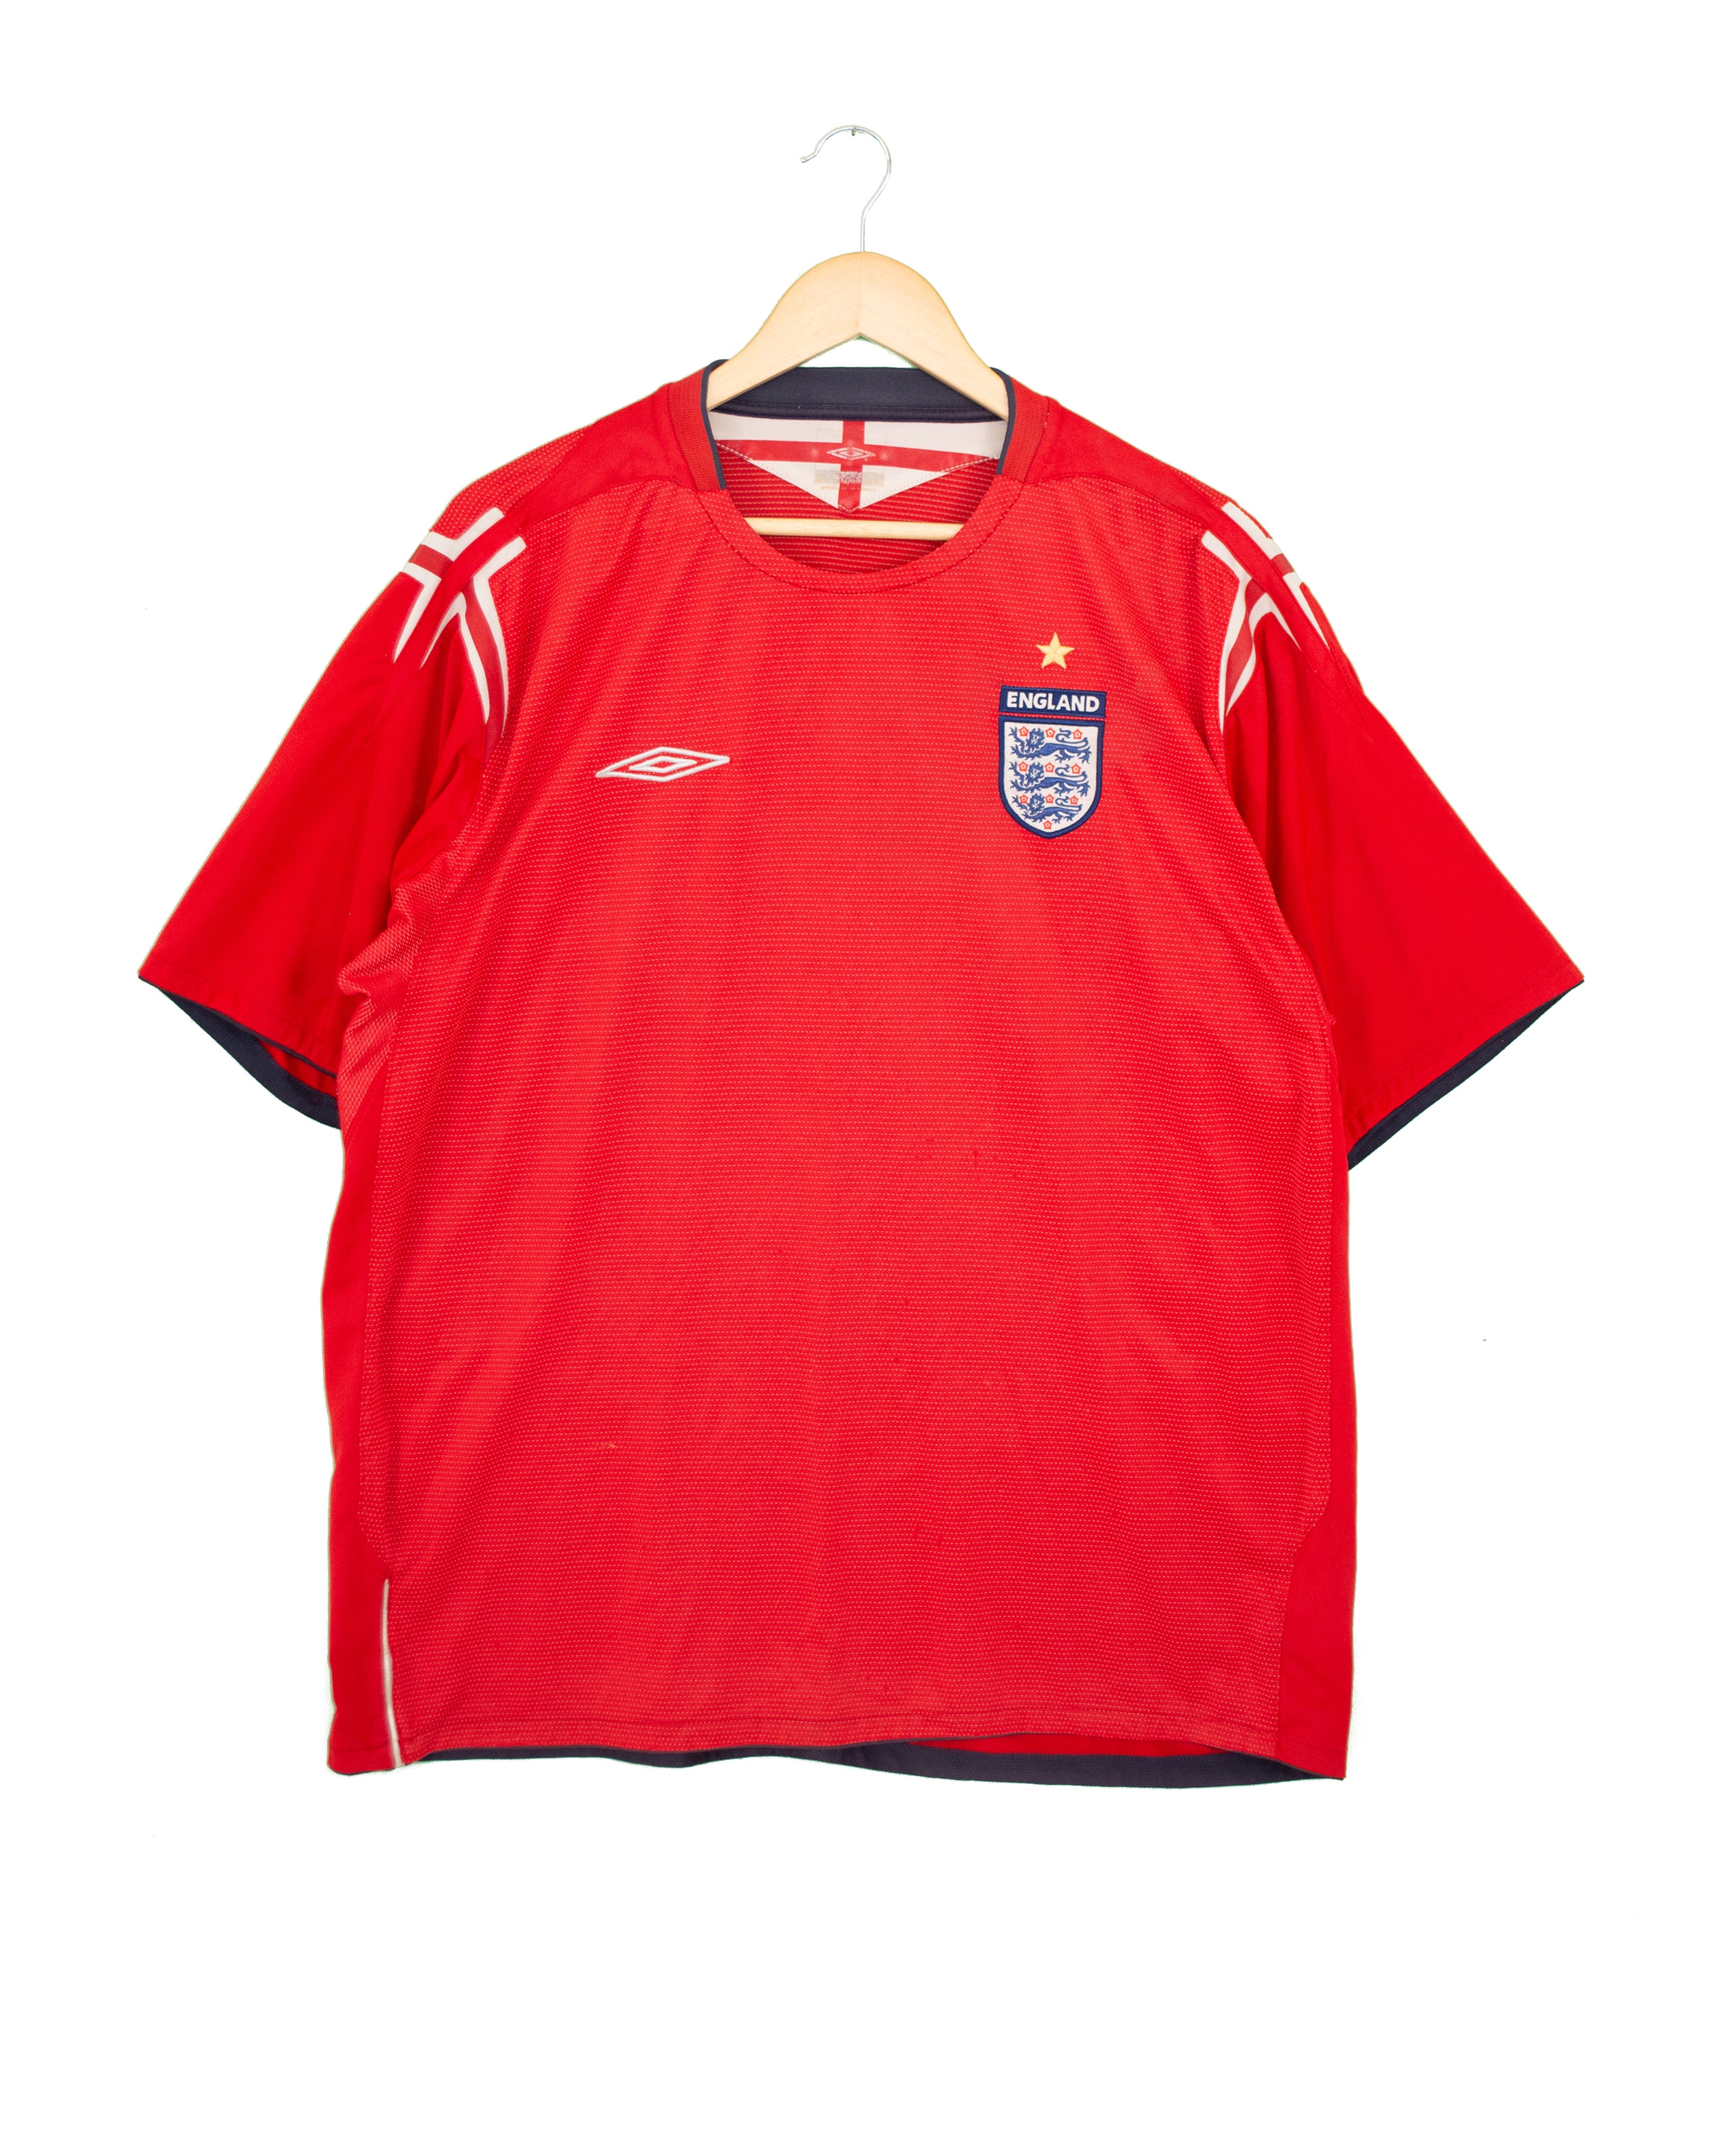 England 2004 Away Shirt - 2XL - #1728